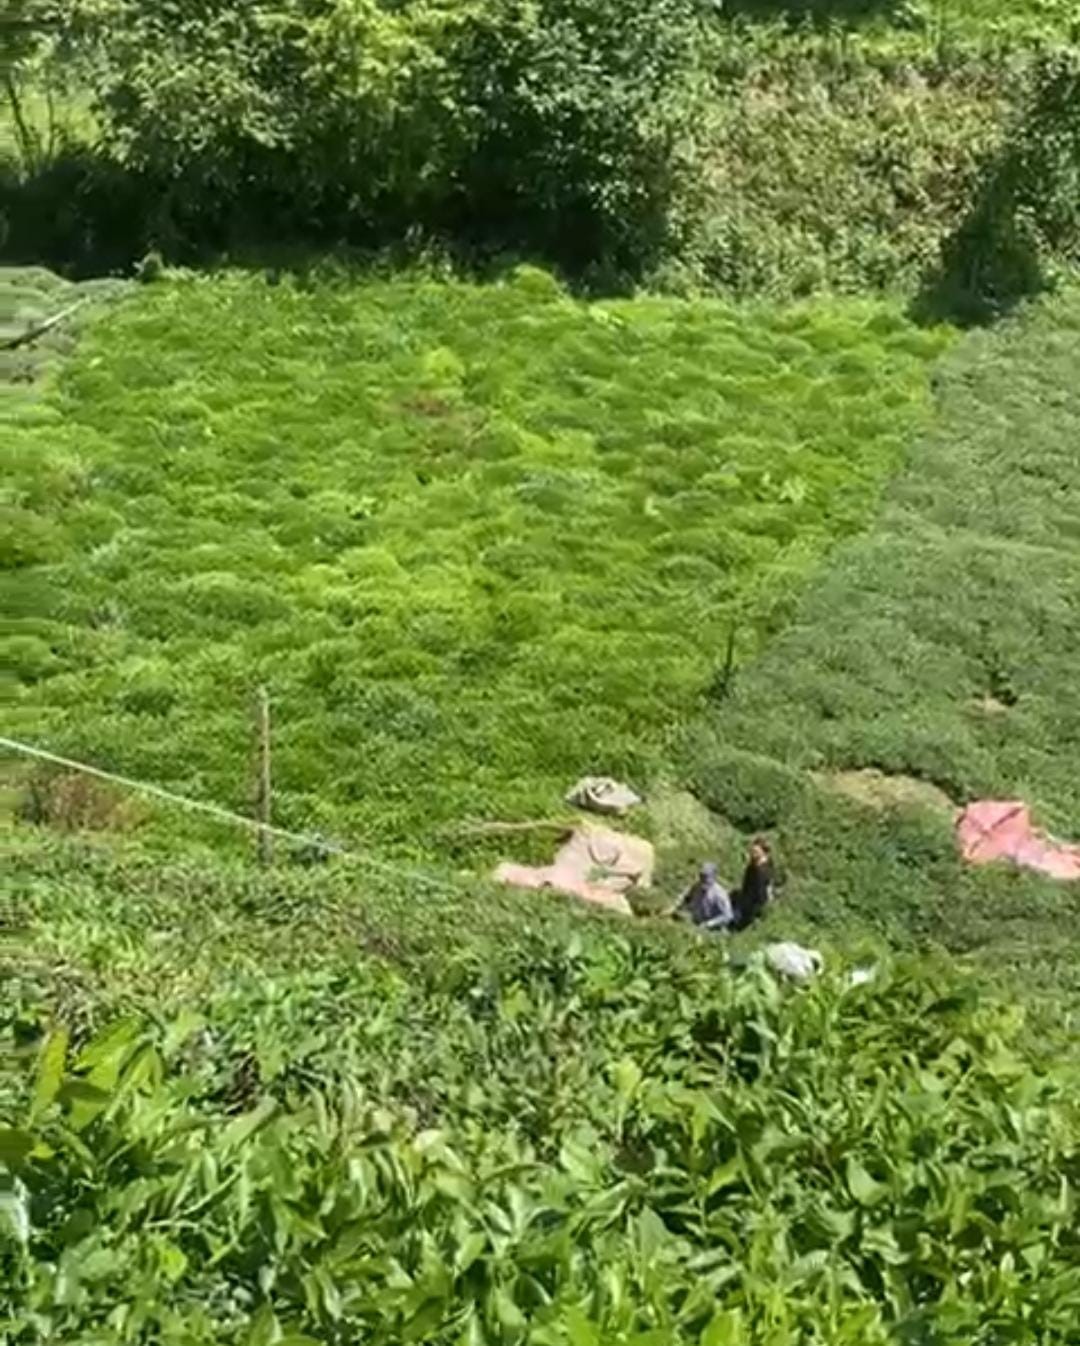 Rizeli Çay Üreticisinin Pratik Yöntemi: Çayını Yokuşları Aşarak Bahçeden Çıkardı